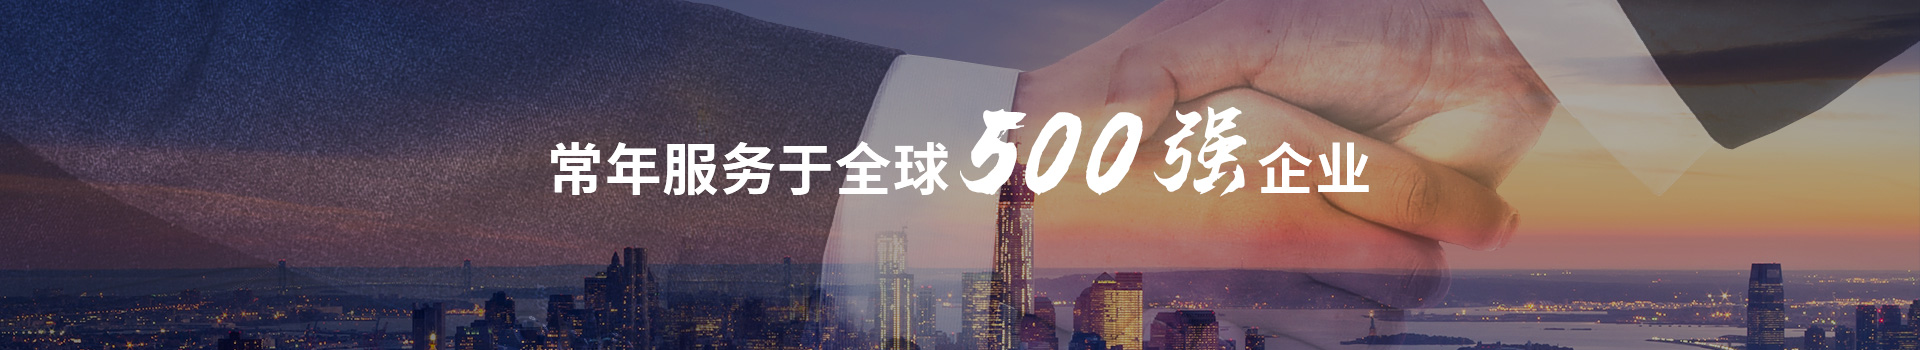 虹光伟业常年服务于全球500强企业